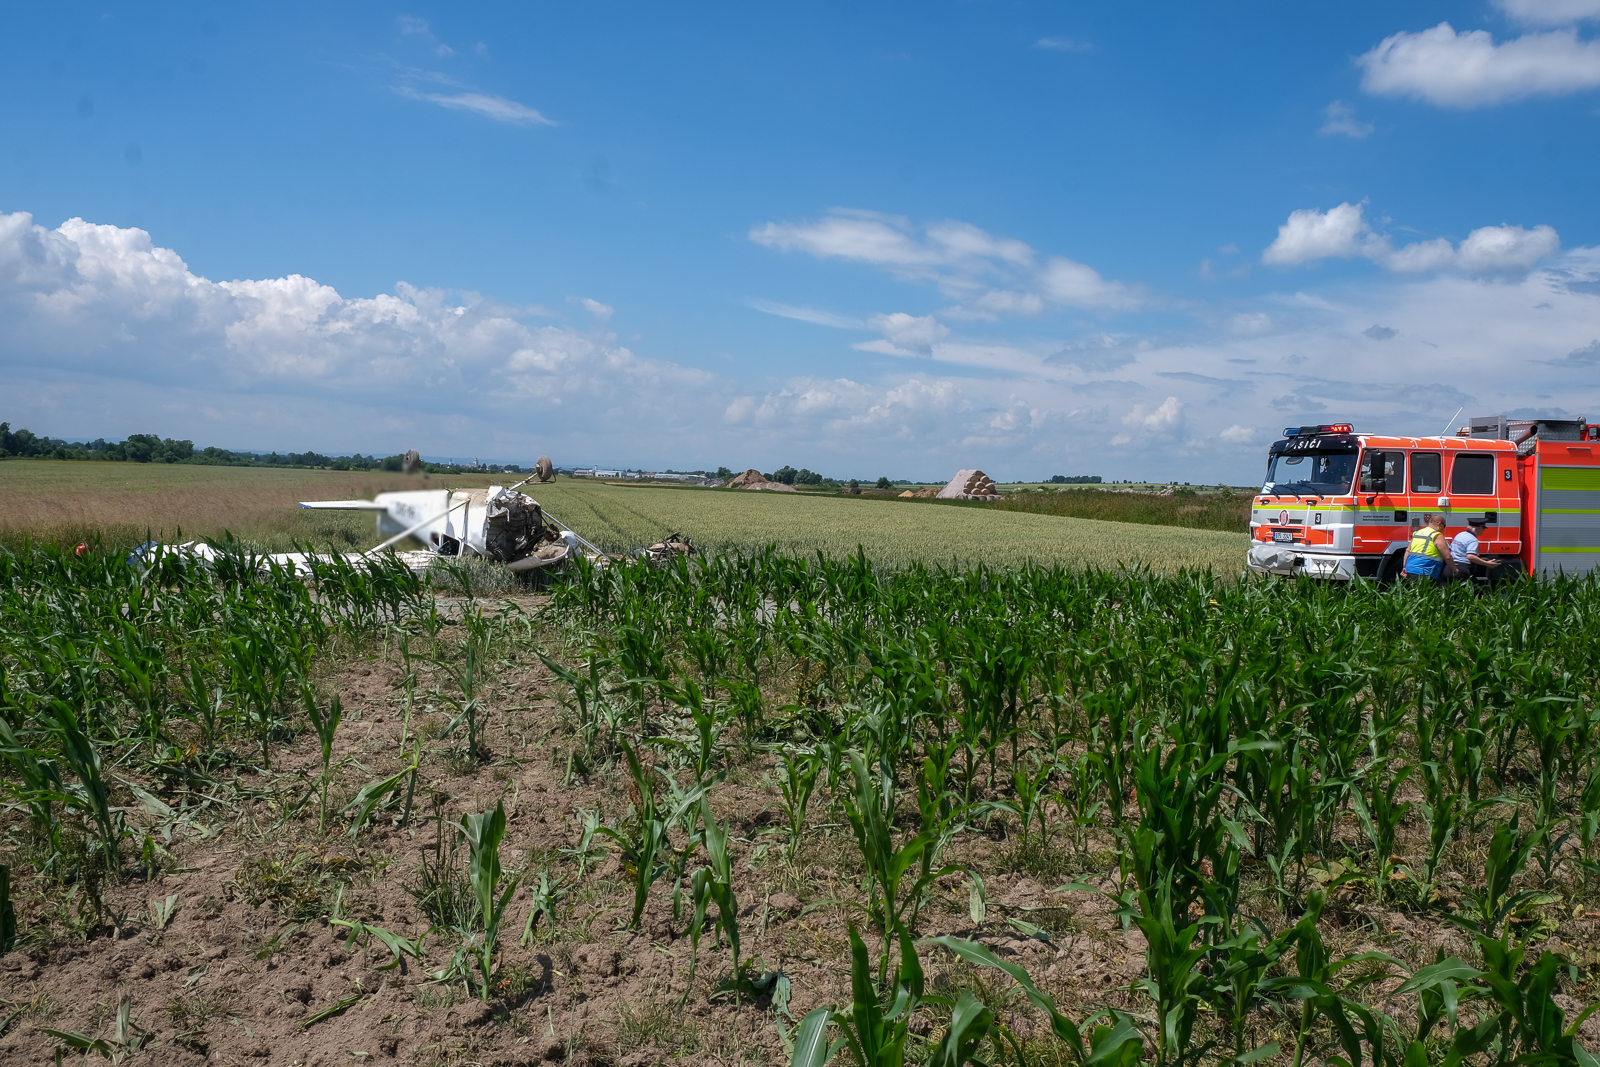 15_MSK_Nehoda Cessny v Zábřehu_havarovaný letoun na poli a hasičská technika.jpg